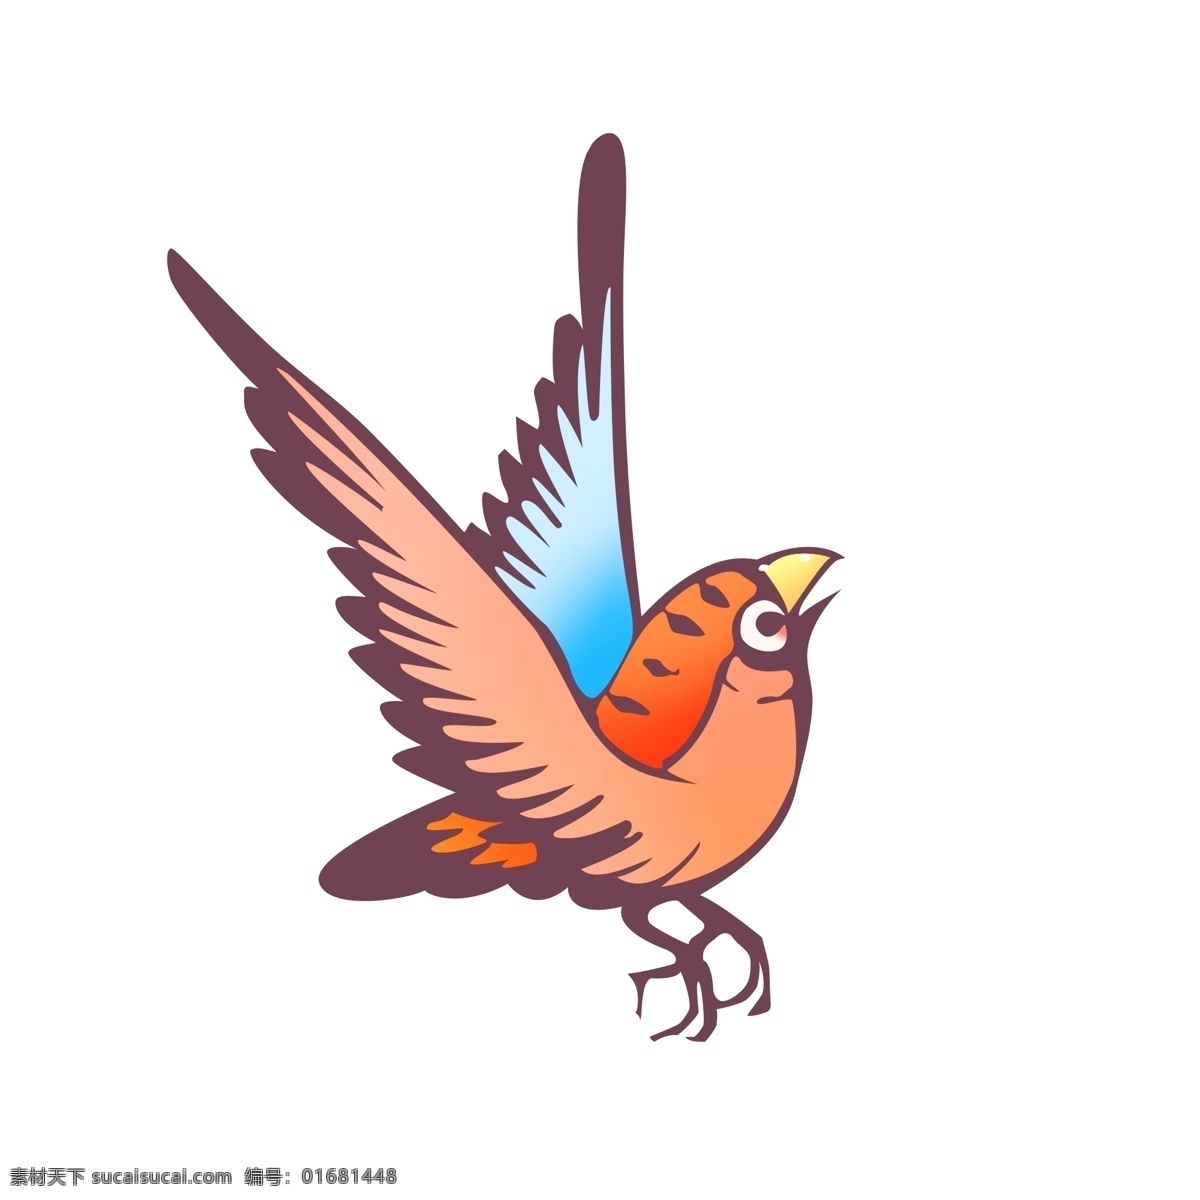 矢量 图形 彩色 小鸟 鸟 矢量图形 源文件 装饰图案 卡通可爱